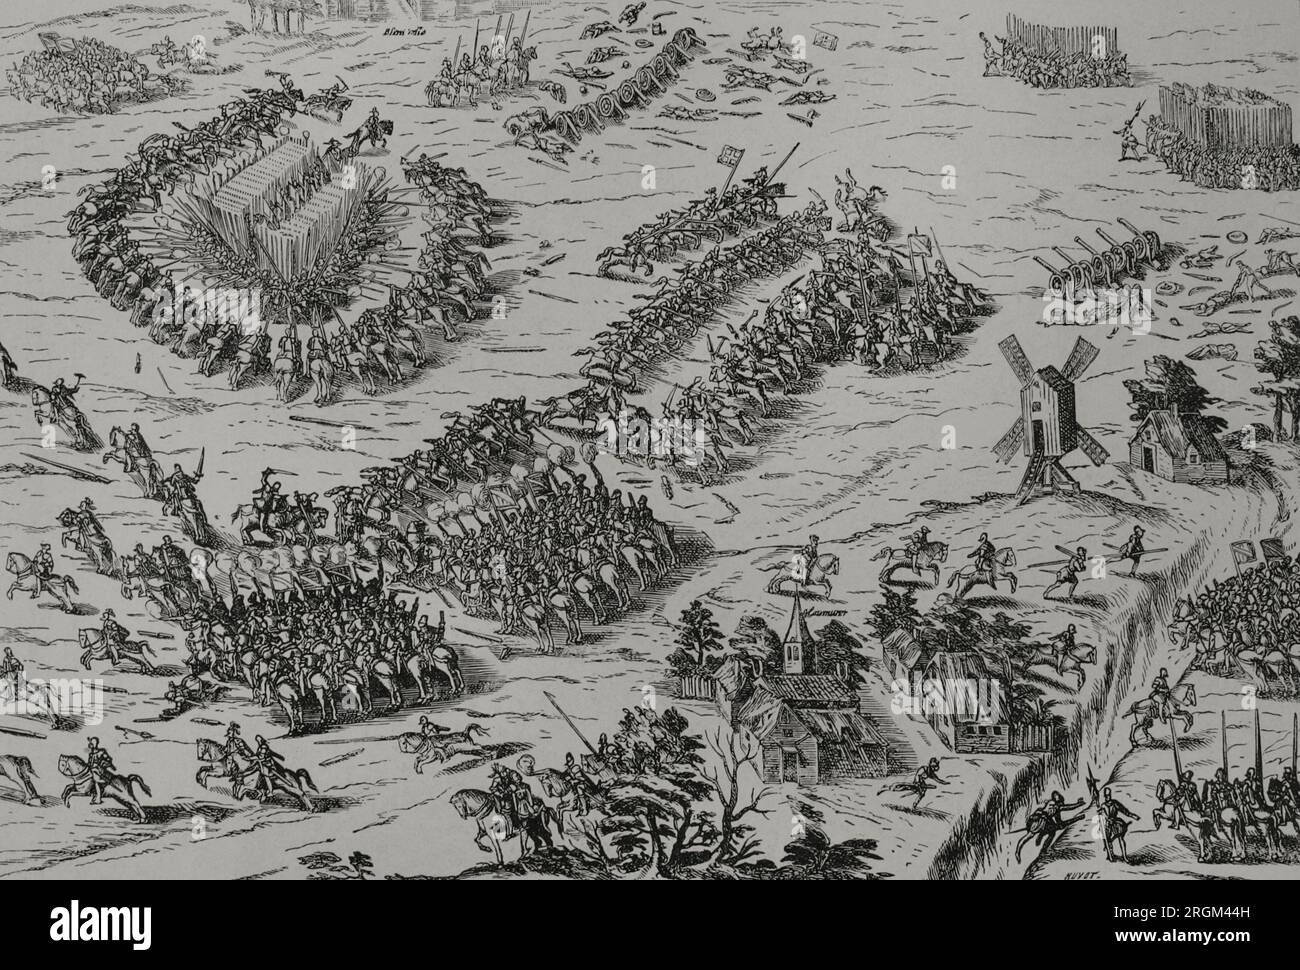 Batalla de Dreux (19 de diciembre de 1562). Los católicos, liderados por el condestable Anne de Montmorency, Francisco (duque de Guise) y el mariscal Jacques d'Albon de Saint-André, derrotaron a los hugonotes comandados por Luis I de Borbón (príncipe de Condé) y el almirante Gaspard II de Coligny. Fue la primera batalla durante las Guerras Francesas de Religión. En primer plano, el mariscal Jacques d'Albon de Saint-André, del lado católico, es asesinado a tiros. Grabado. 'Vie Militaire et Religiuse Au Moyen Age et l'Epoque de la Renaissance'. París, 1877. Foto de stock